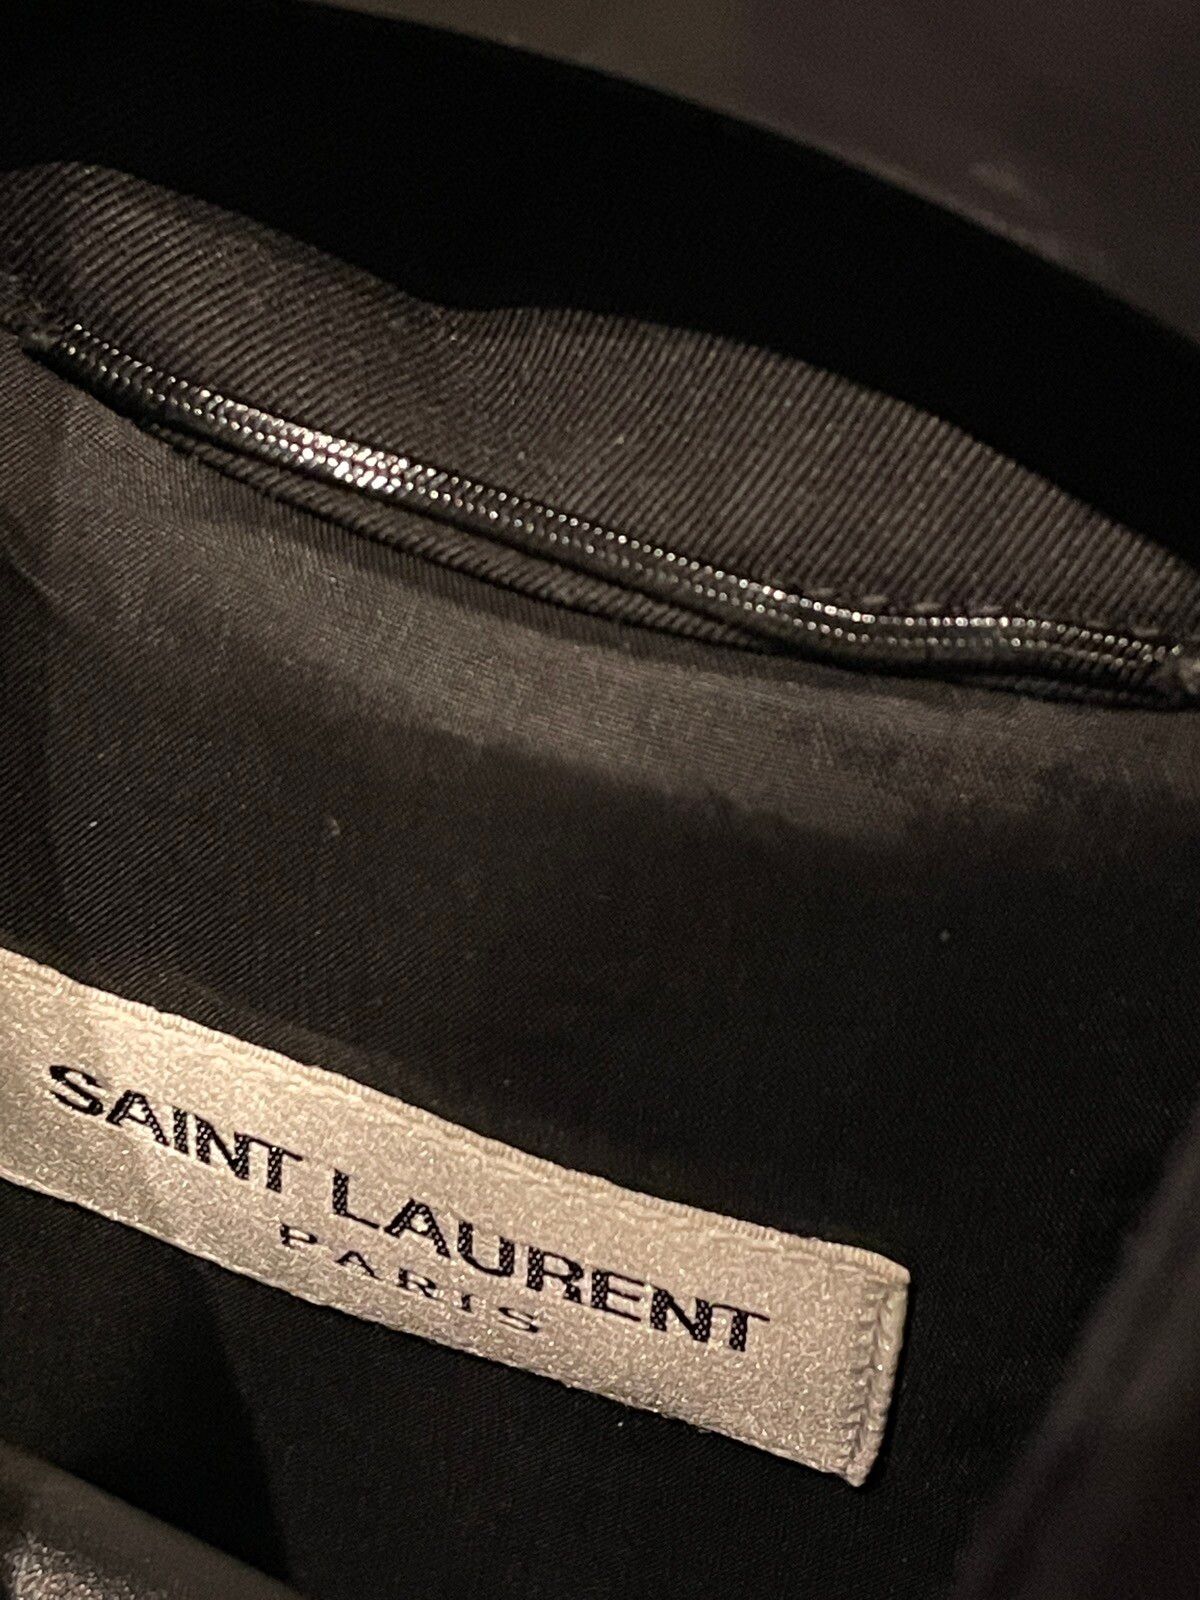 Saint Laurent yeah baby jacket - 5